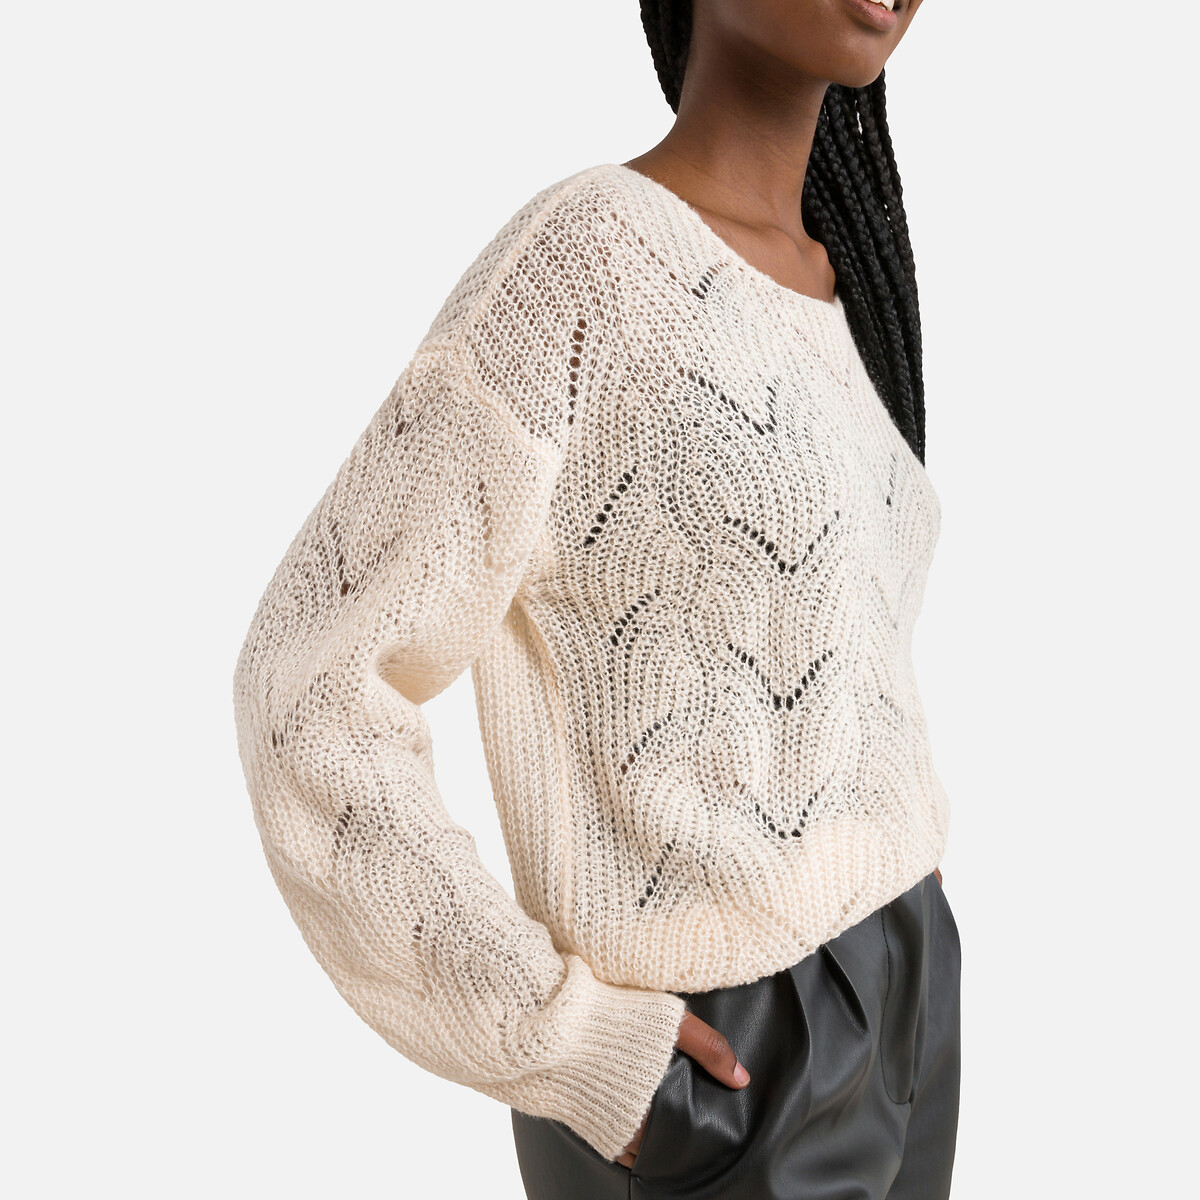 Пуловер С круглым вырезом из ажурного трикотажа S бежевый LaRedoute, размер S - фото 3